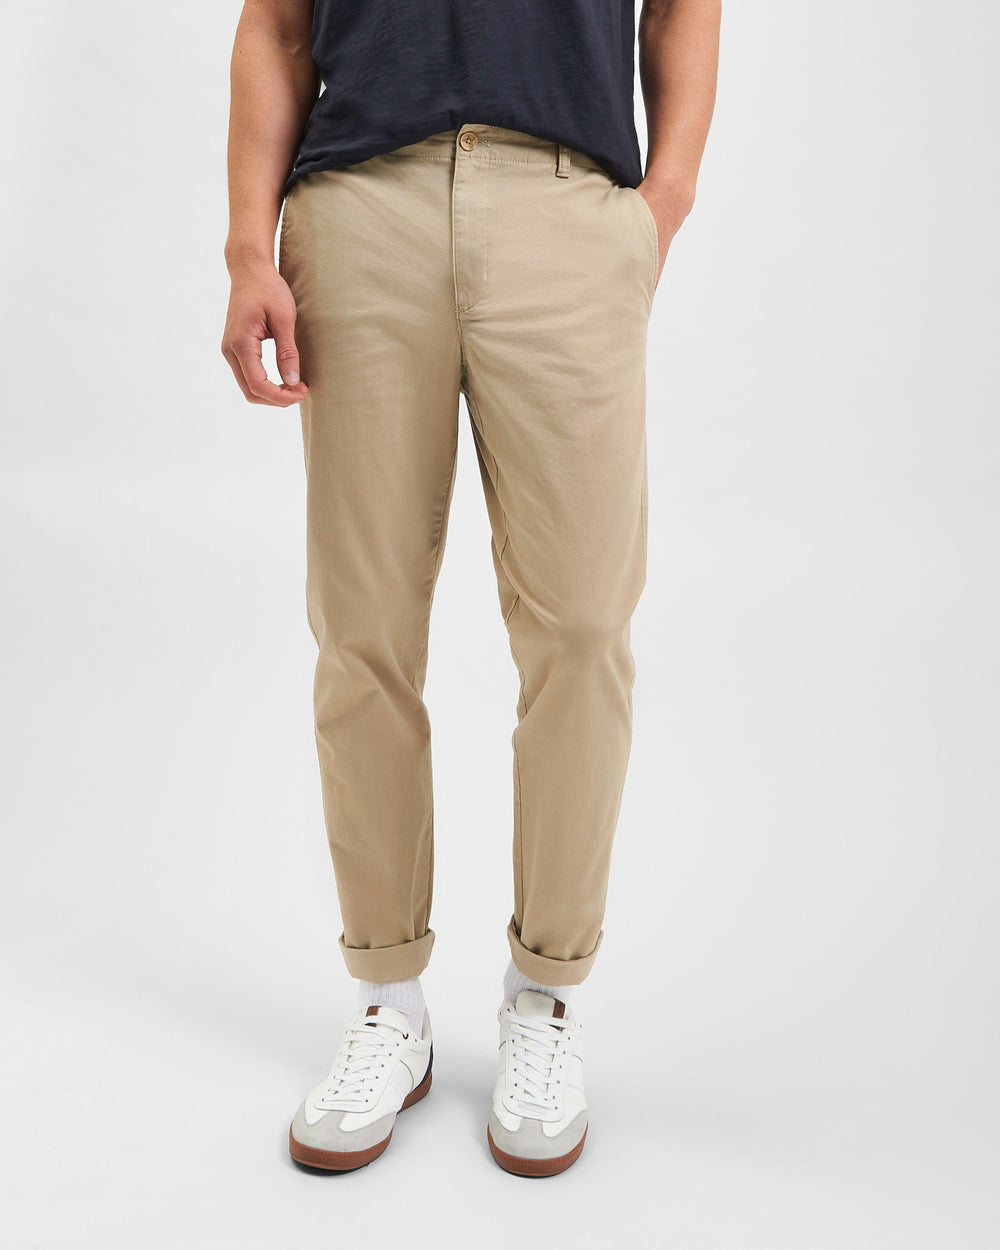 Men's Mid-rise Tapered Leg Pants - Original Use™ Khaki S : Target